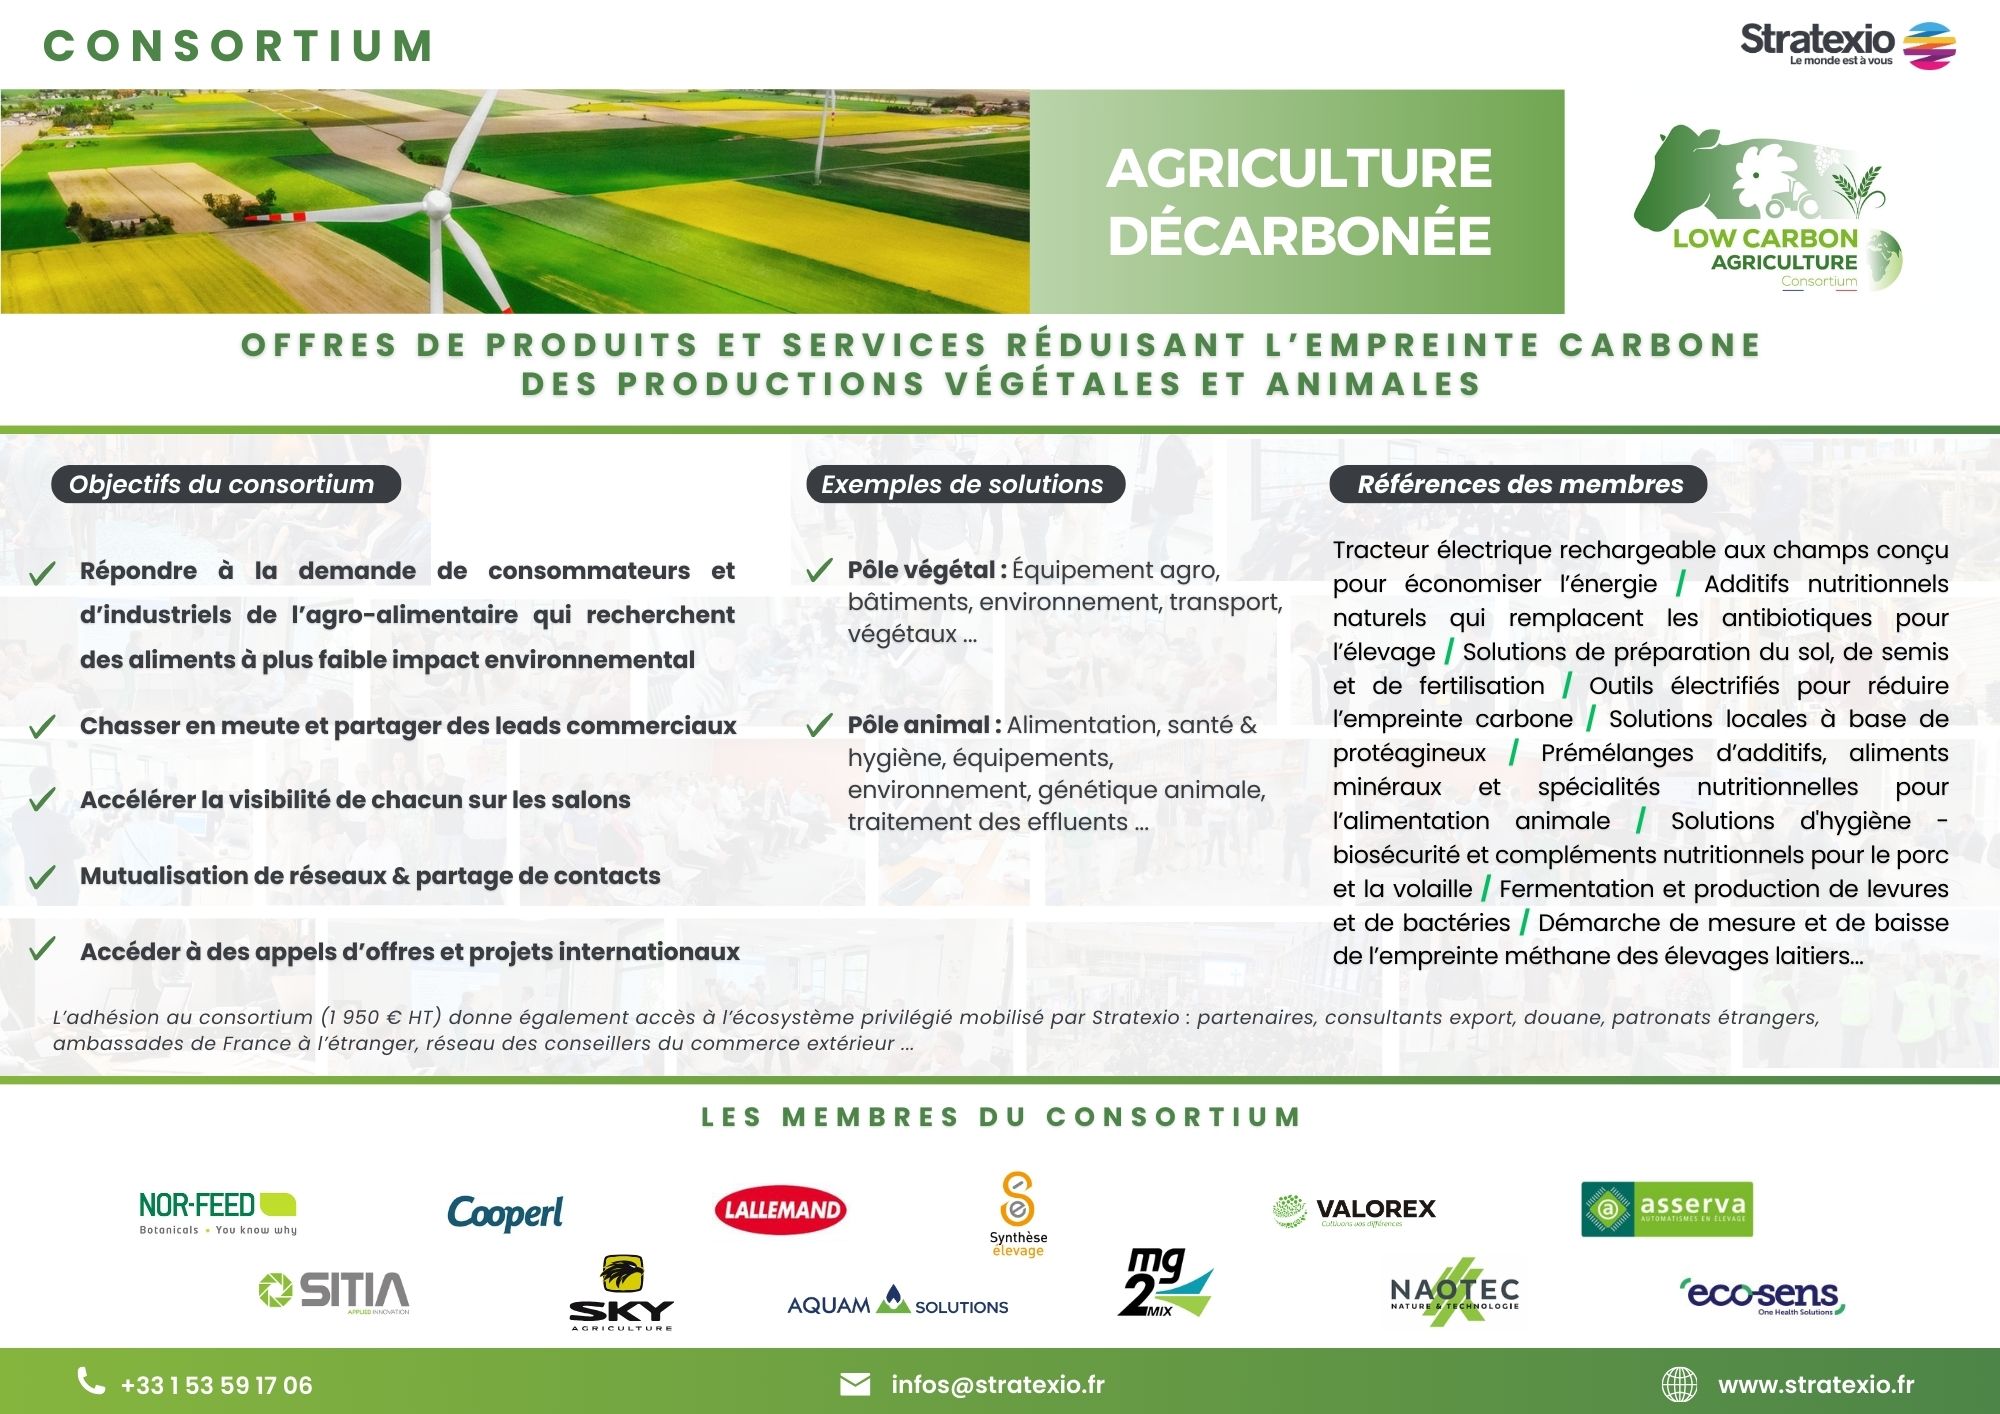 Présentation du consortium économique des entreprises françaises qui agissent sur la décarbonations dans le secteur agricole